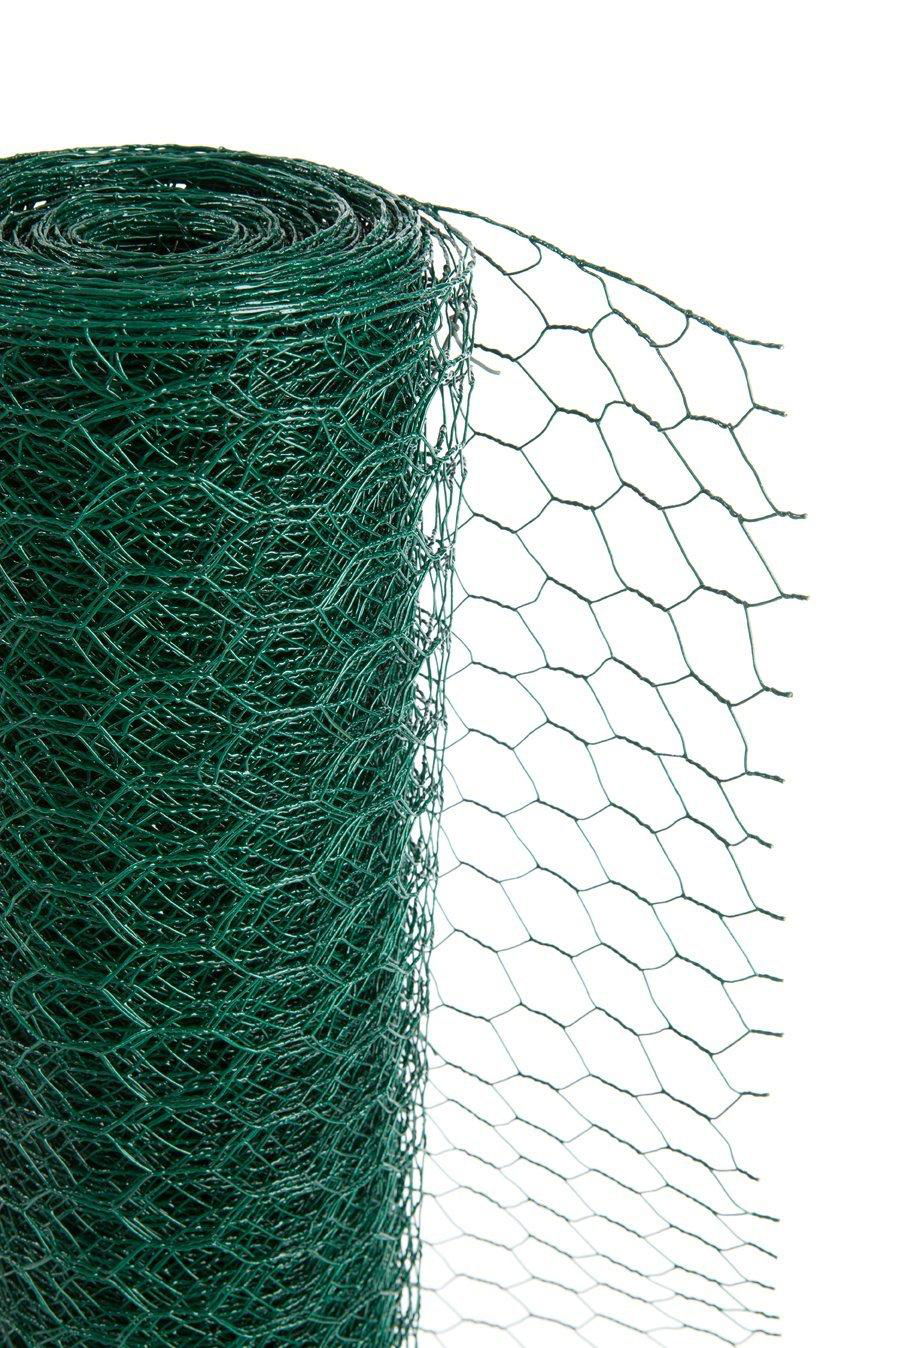 hot-dipped hexagonal wire mesh / welded galvanized gabion wire mesh